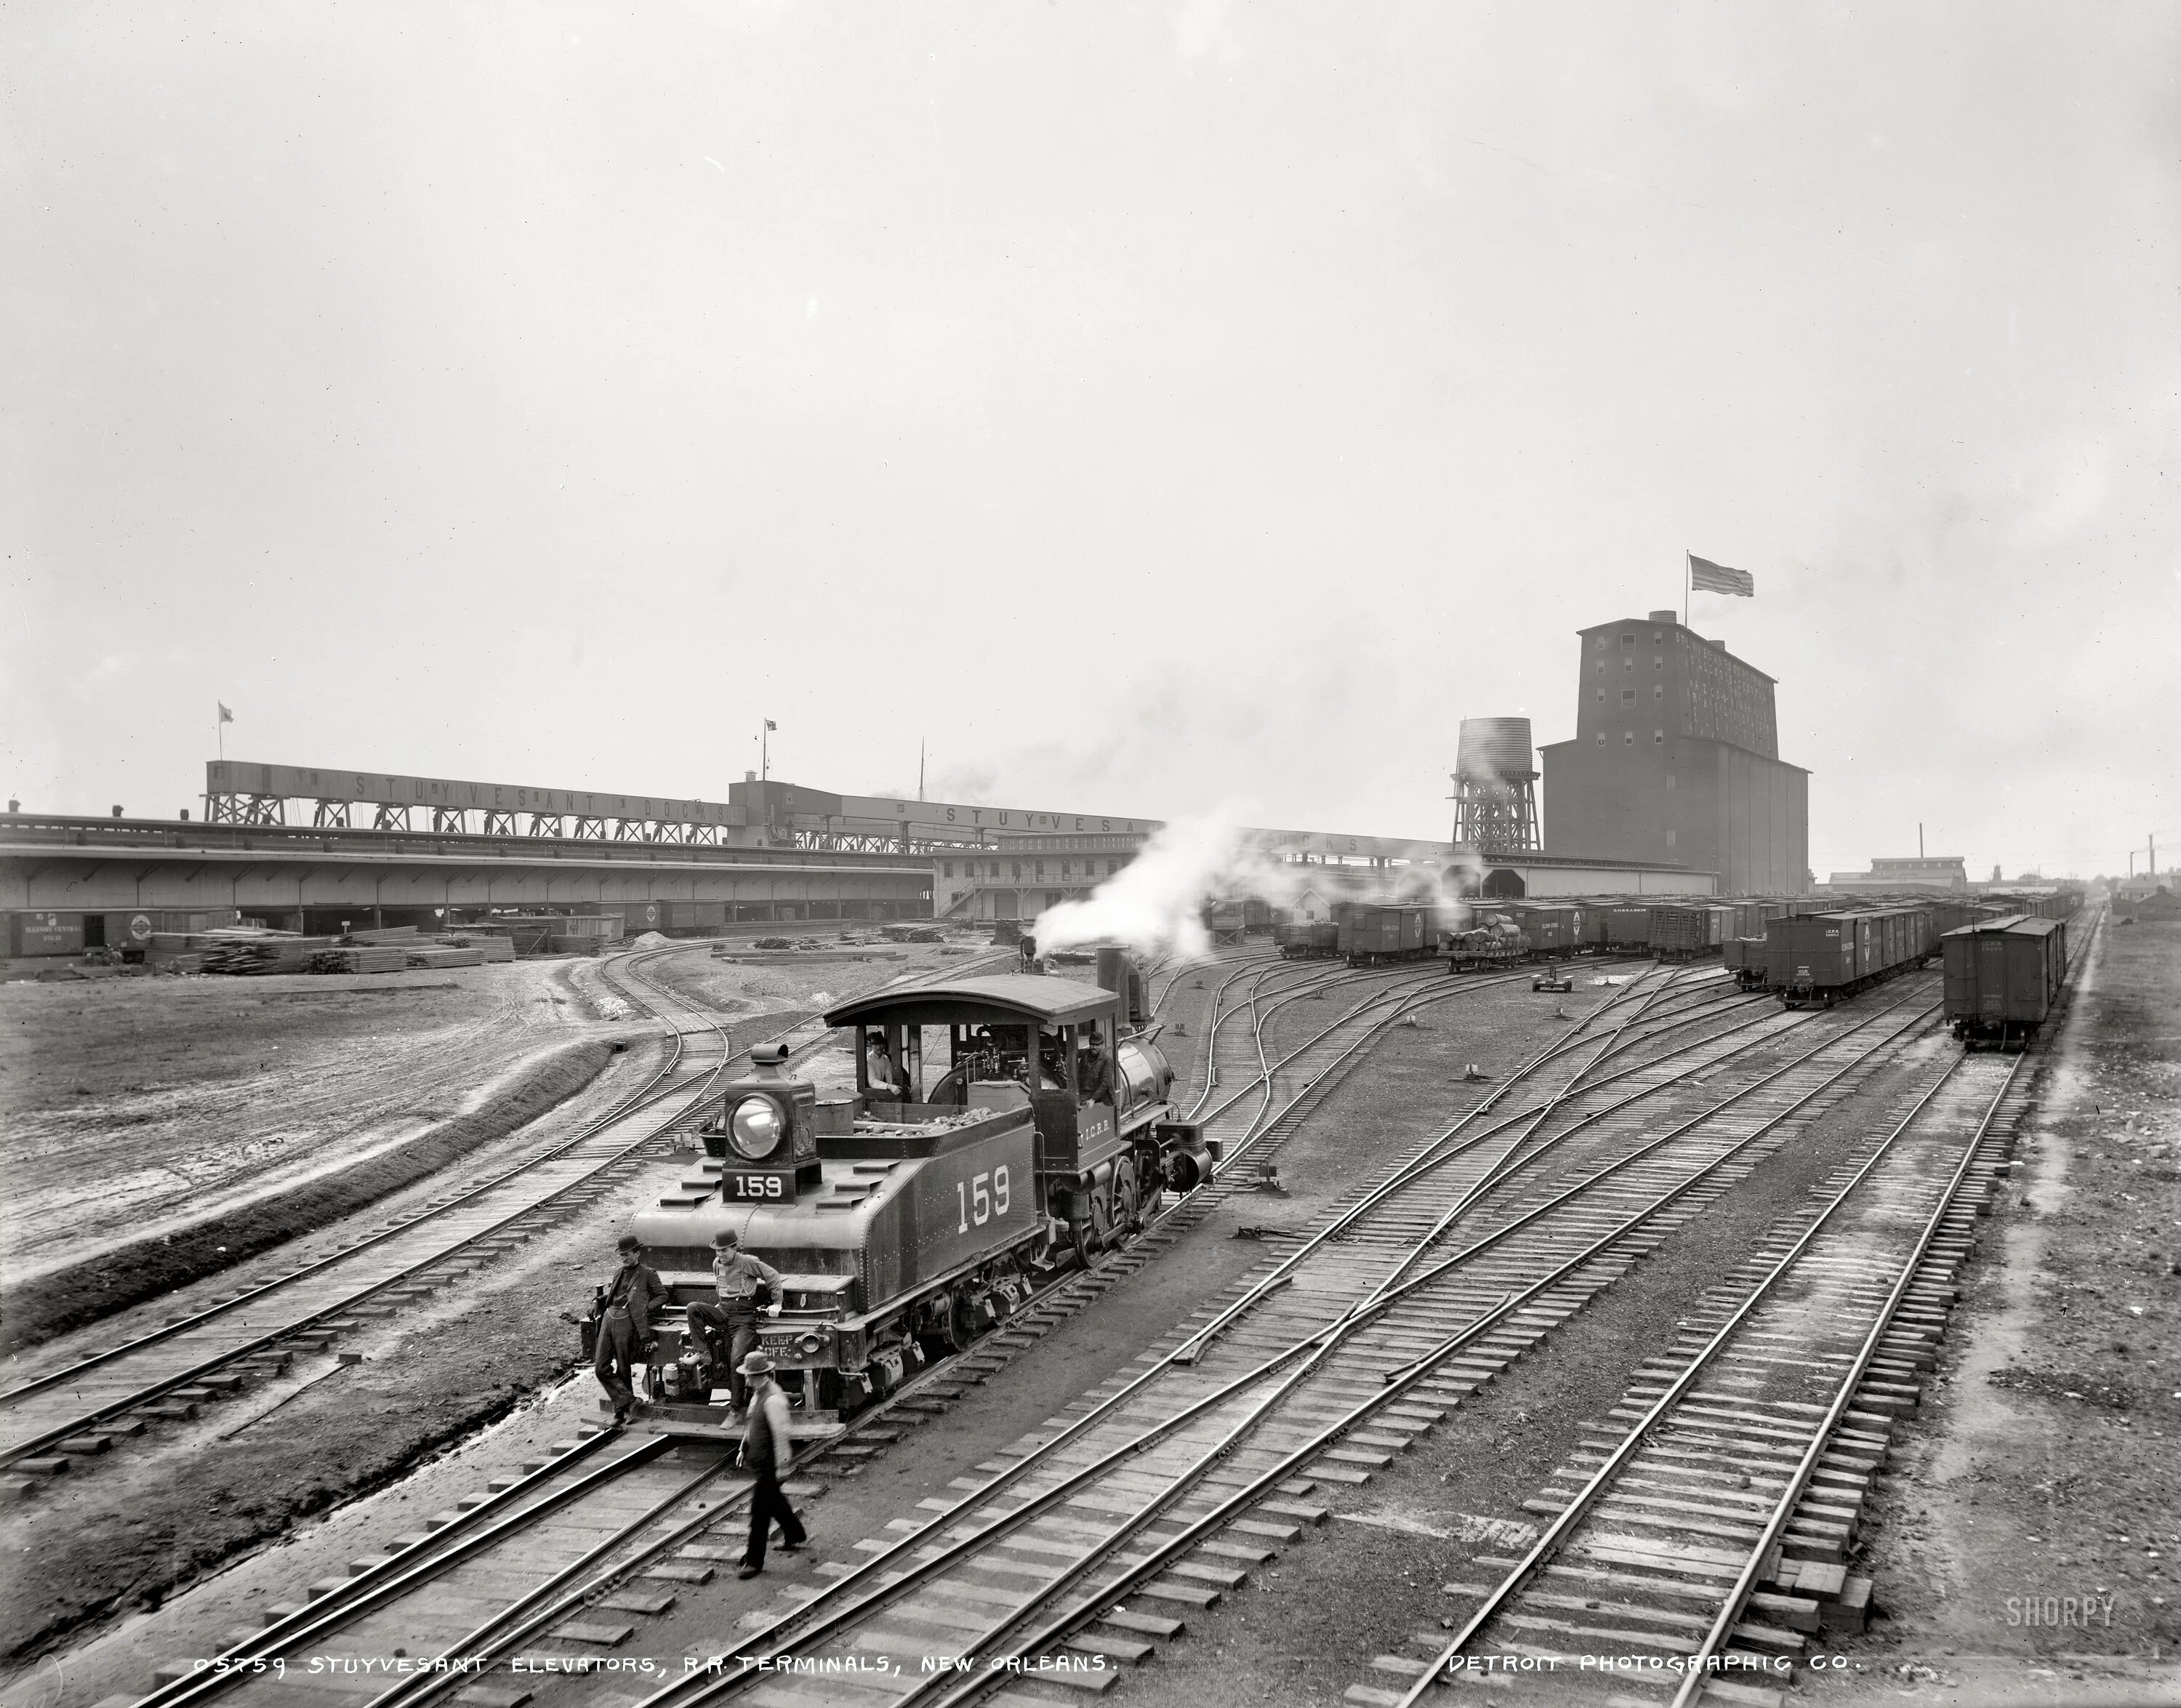 Железные дороги США 1900. Железные дороги в США В начале 20 века. Железная дорога США 19 век. Железные дороги 19 века США.